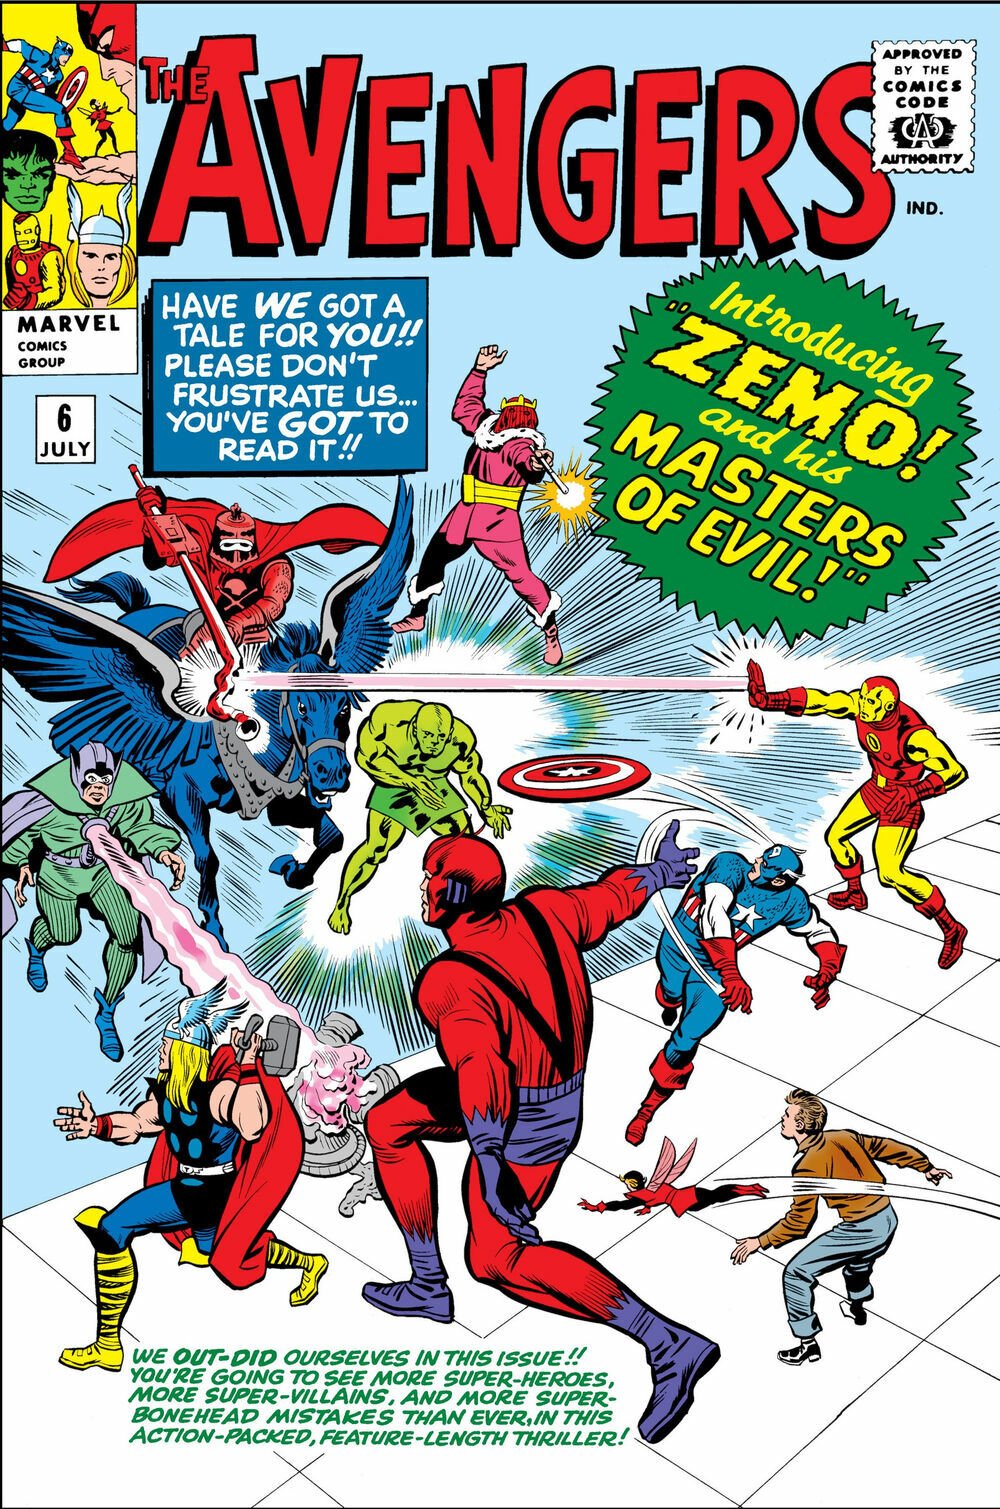 La cover di The Avengers numero 6 mostra i Signori del male contro i Vendicatori